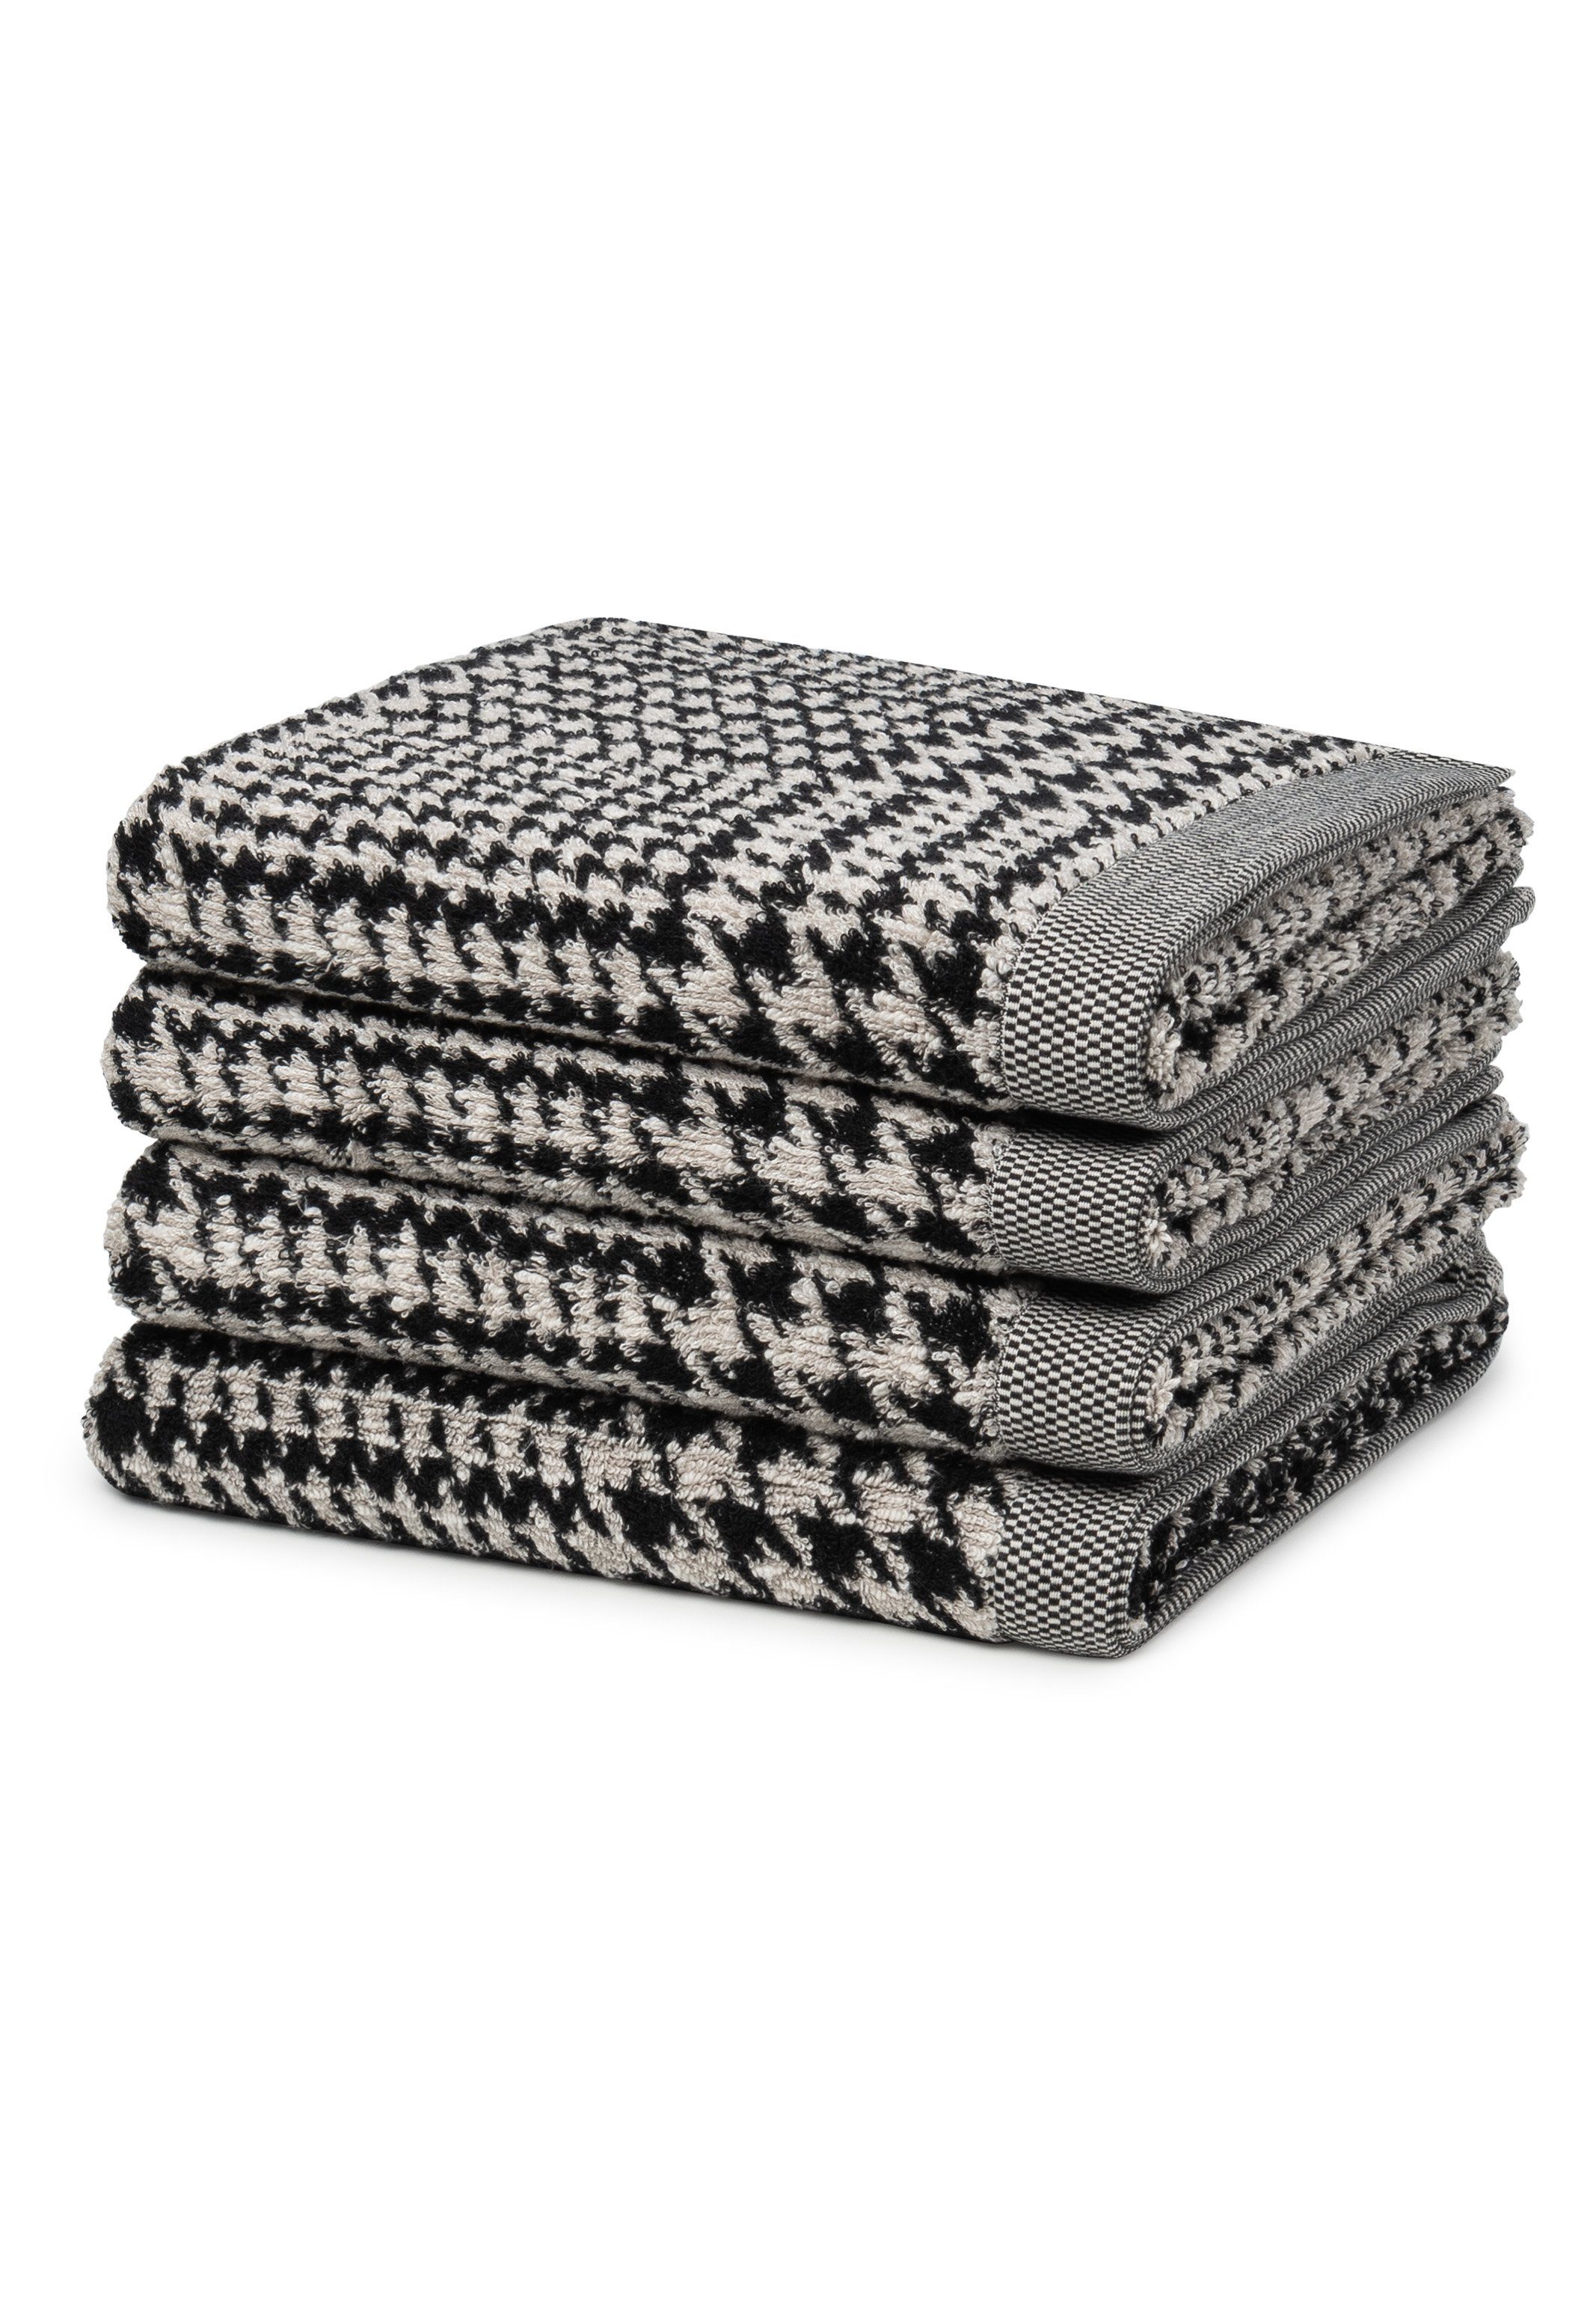 Möve Handtuch Set Materialmix - X Baumwolle - Handtuch - Glencheck, Weicher Nature/Black (Spar-Set, 4-tlg), 4 Brooklyn Set im Baumwolle